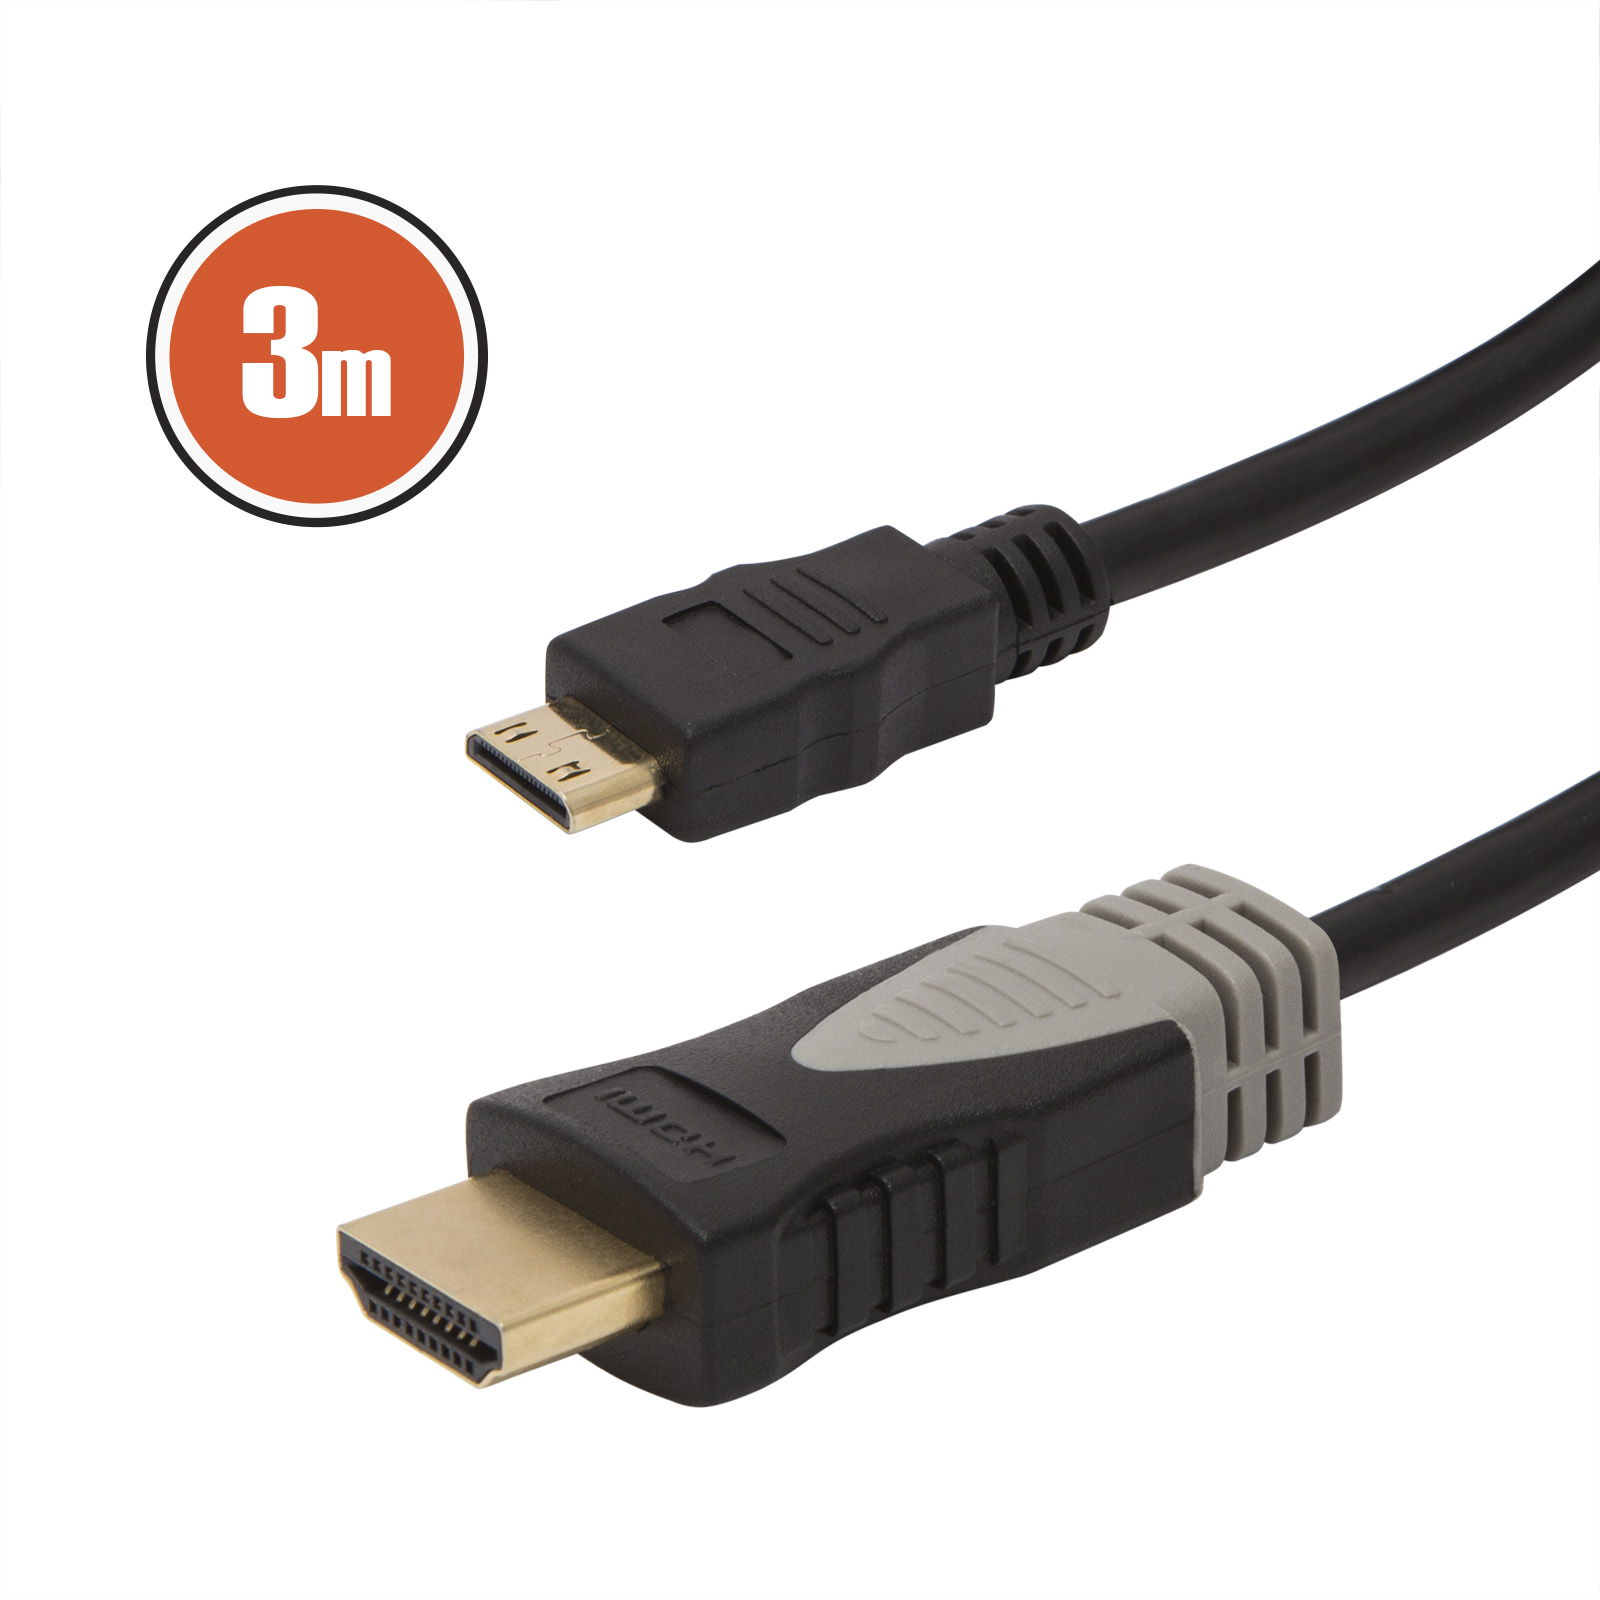 Mini HDMI cable • 3 m thumb